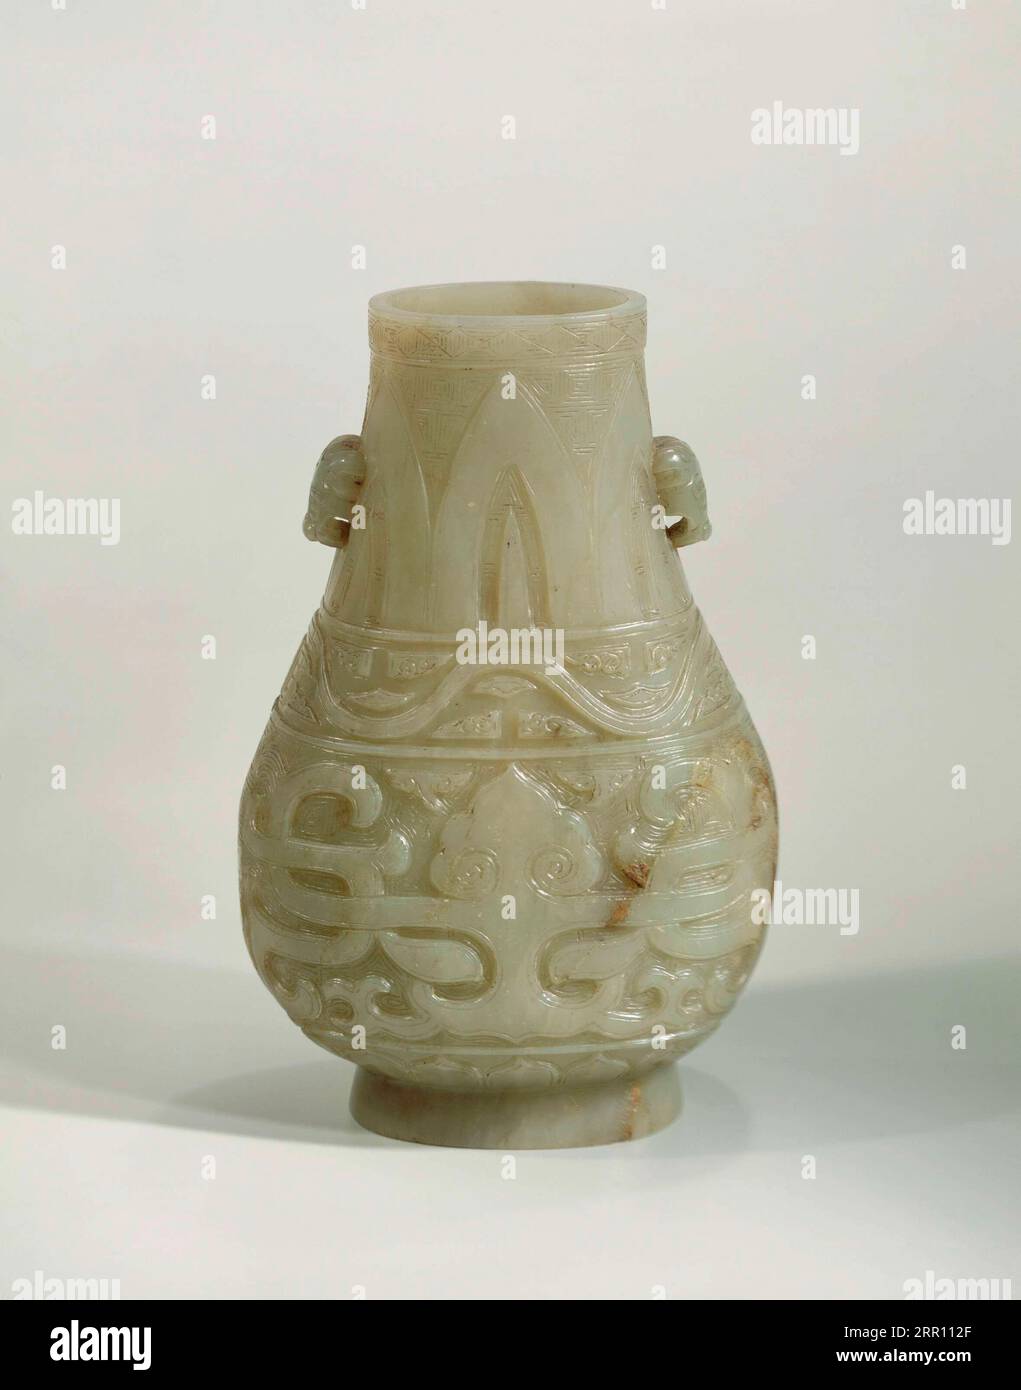 Piccolo vaso, vaso a forma di pera di giada verde chiaro e giallo, decorato con archivi di decorazione in bronzo. Cina, 1775 - 1800, periodo Qianlong (1736-1795 Foto Stock